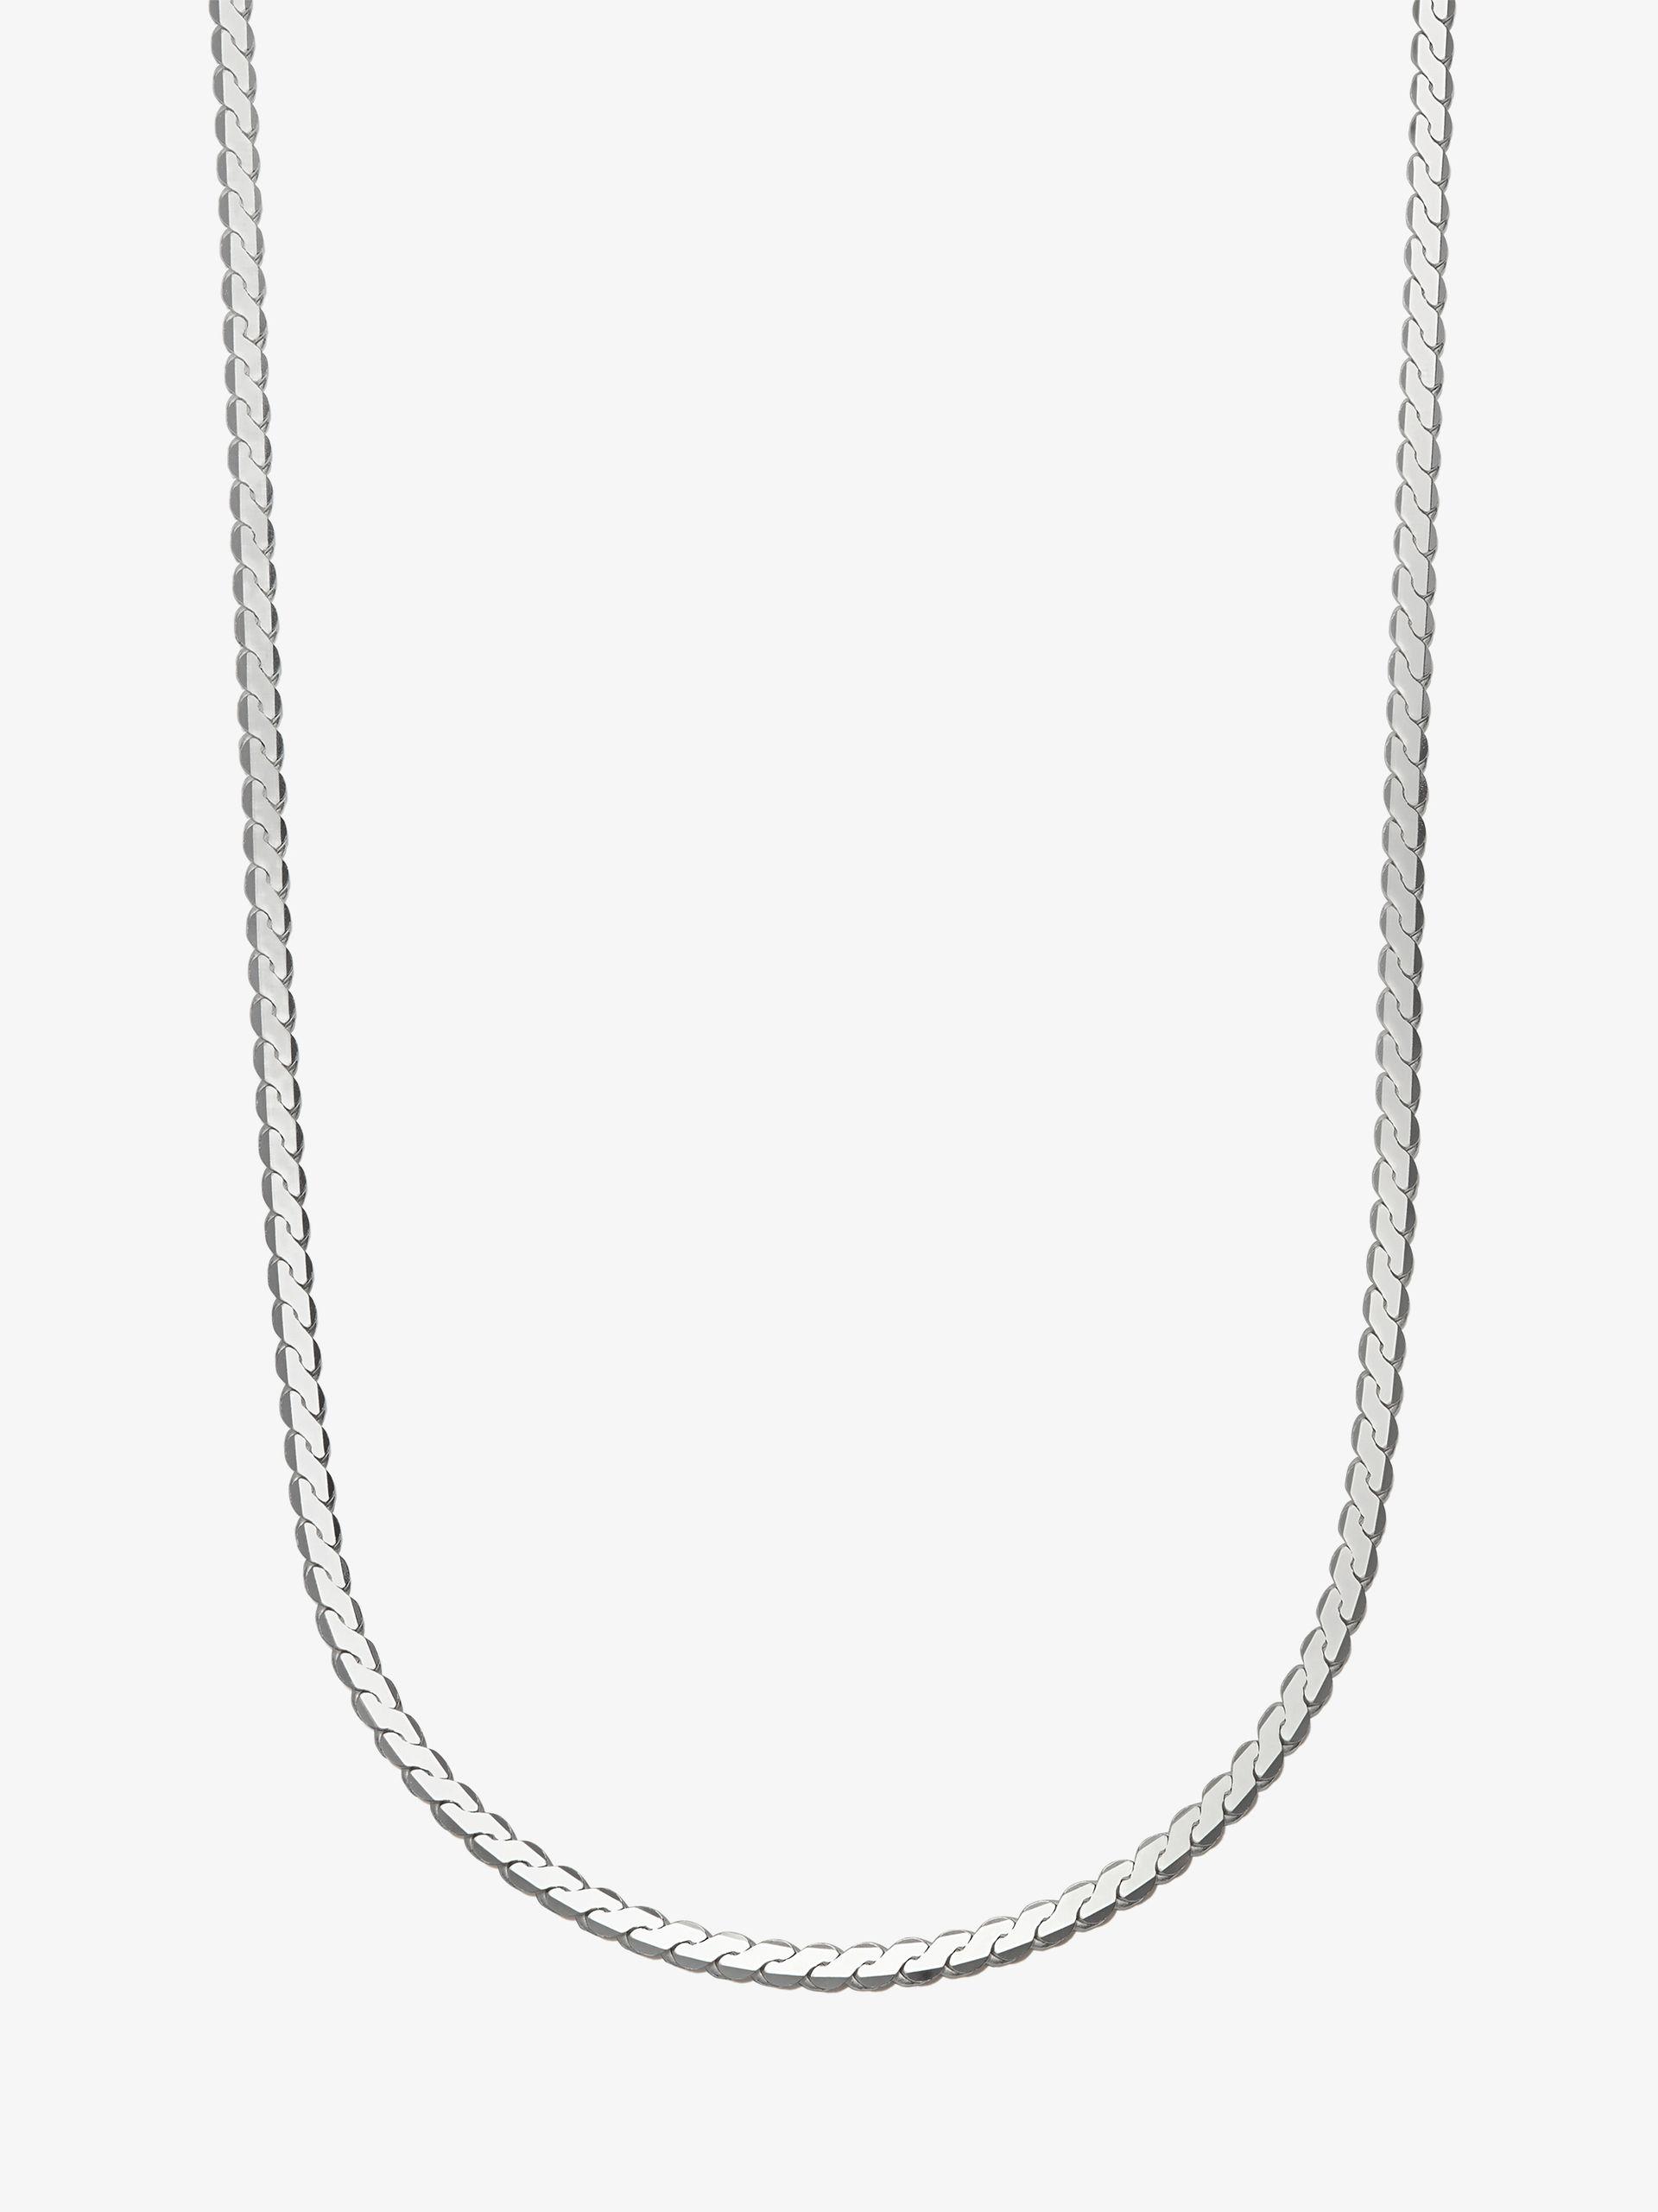 Loren Stewart Gold Vermeil Necklace - Women - Gold Fashion Jewelry - One Size